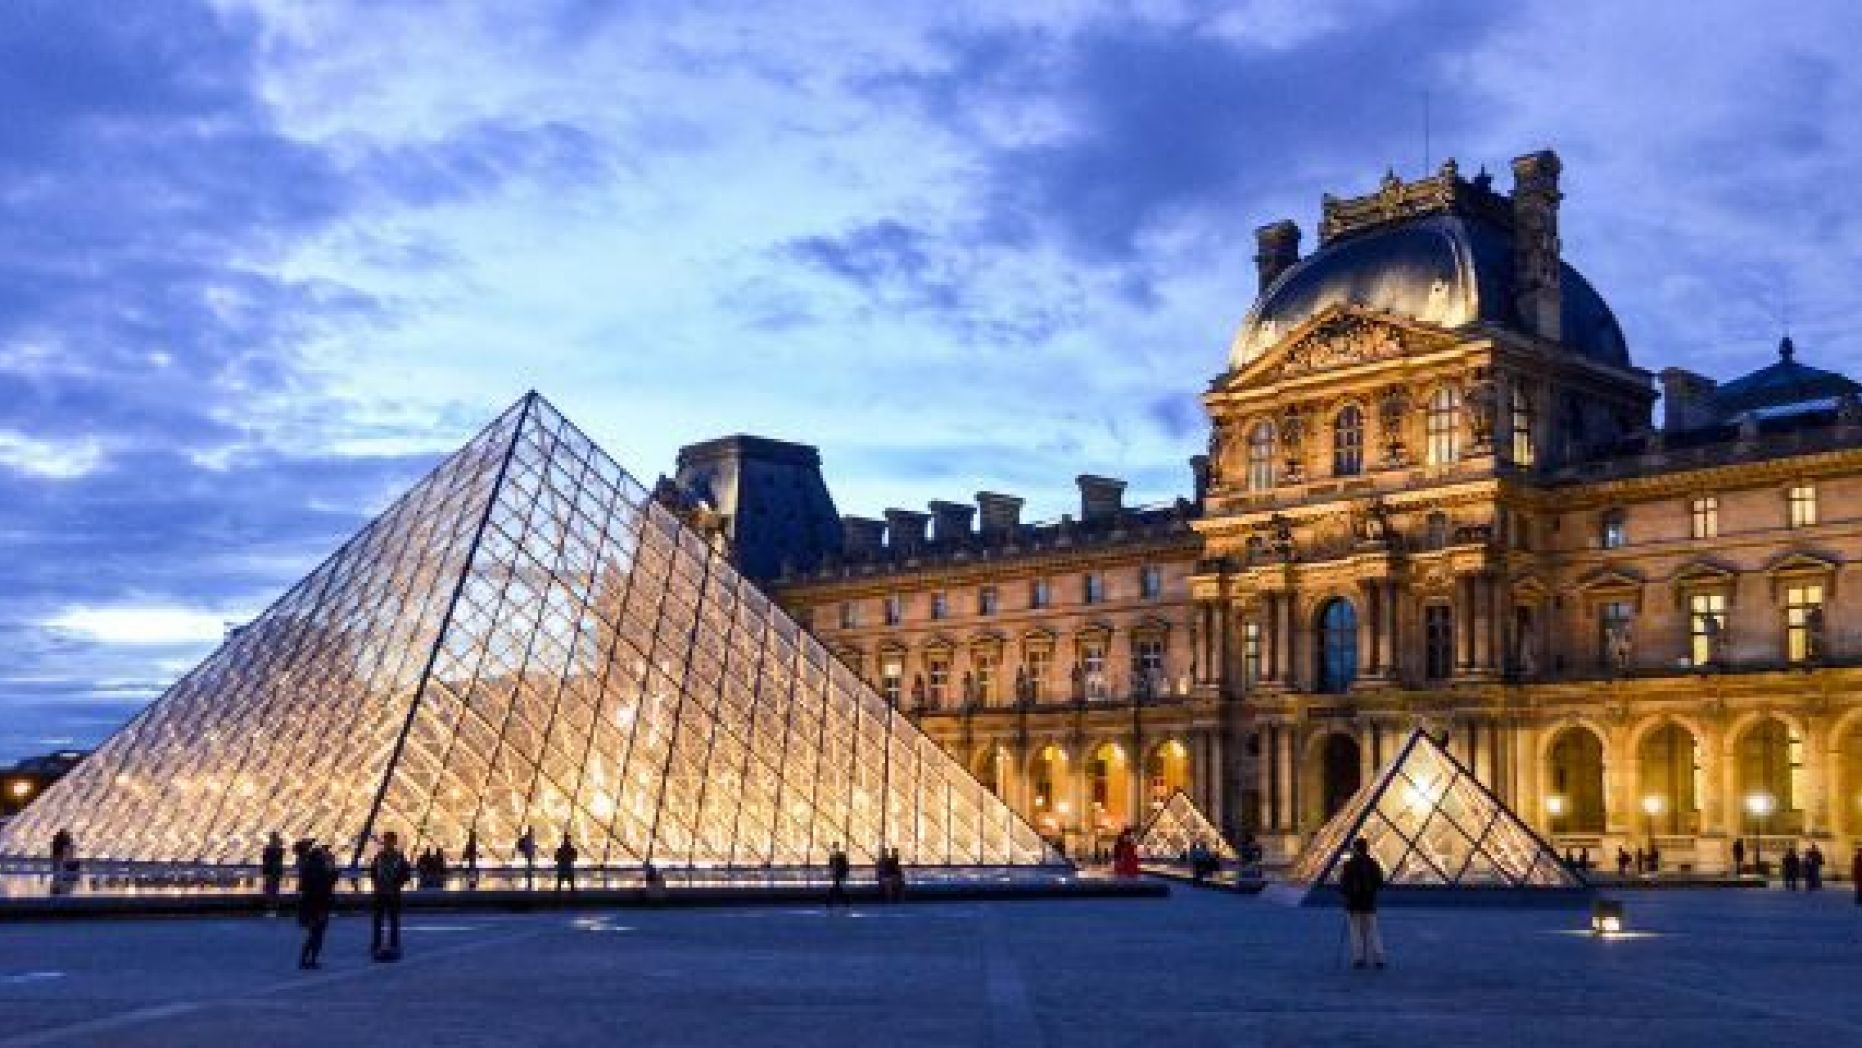 프랑스 파리에 있는 크고 아름다운 박물관으로 세계 3대 박물관으로 선정된 루브르 박물관. 프랑스하면 대표적으로 떠오르는 명소이기도 하며 누구나 한 번쯤은 꼭 방문해보고 싶은 장소이다. 그러나 이 박물관에서 한 여성 모델�